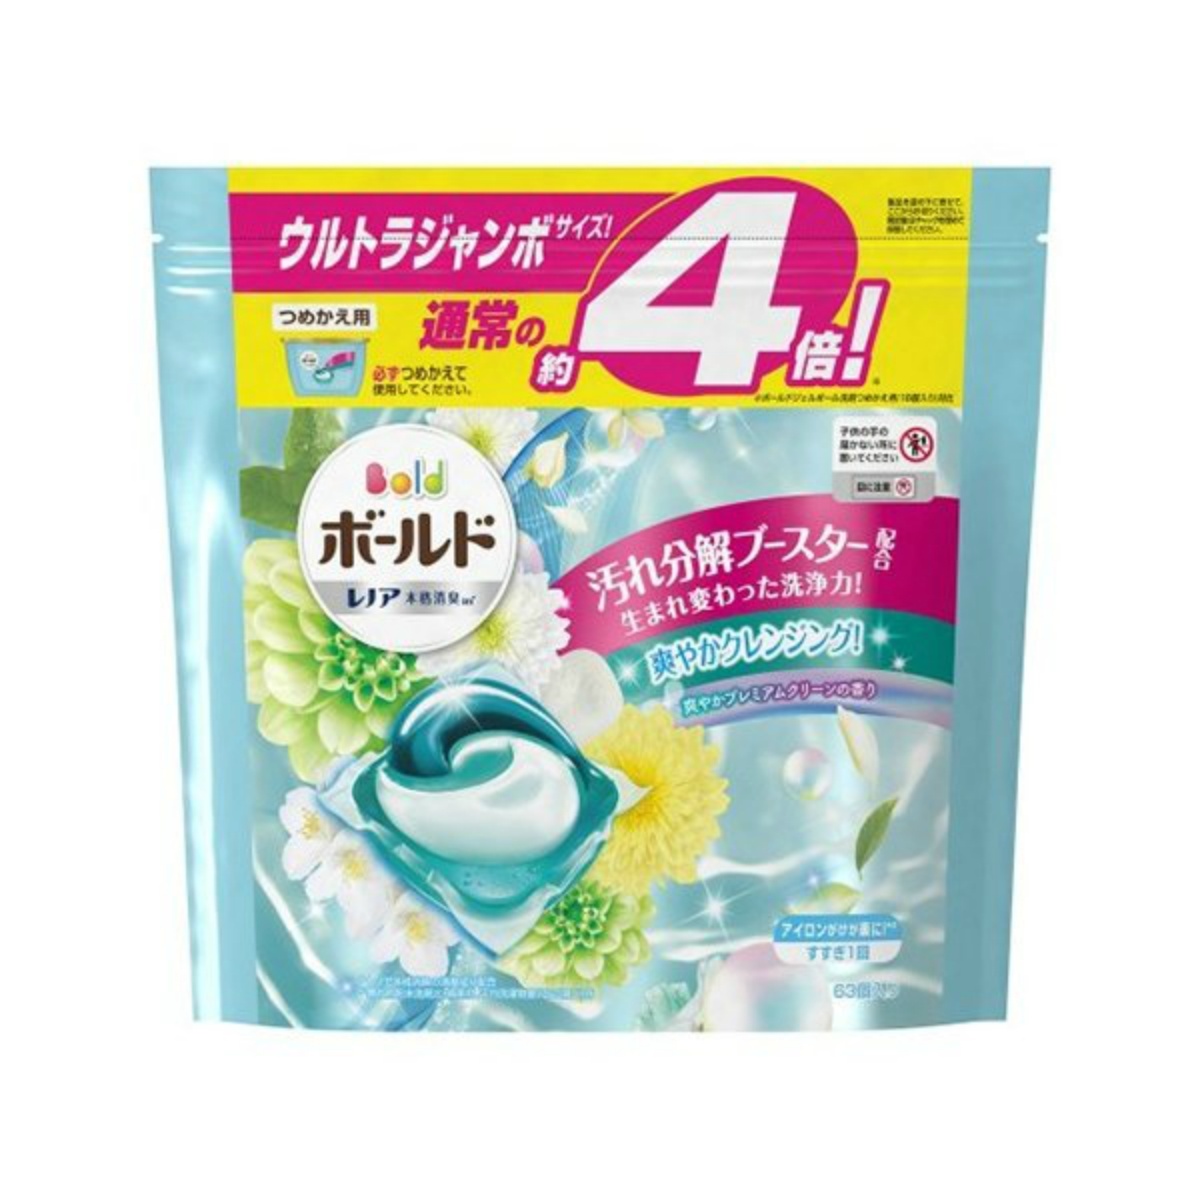 P&G ボールド ジェルボール3D [つめかえ用] 爽やかプレミアムクリーンの香り 63個入り × 1個 ボールド 液体洗剤の商品画像